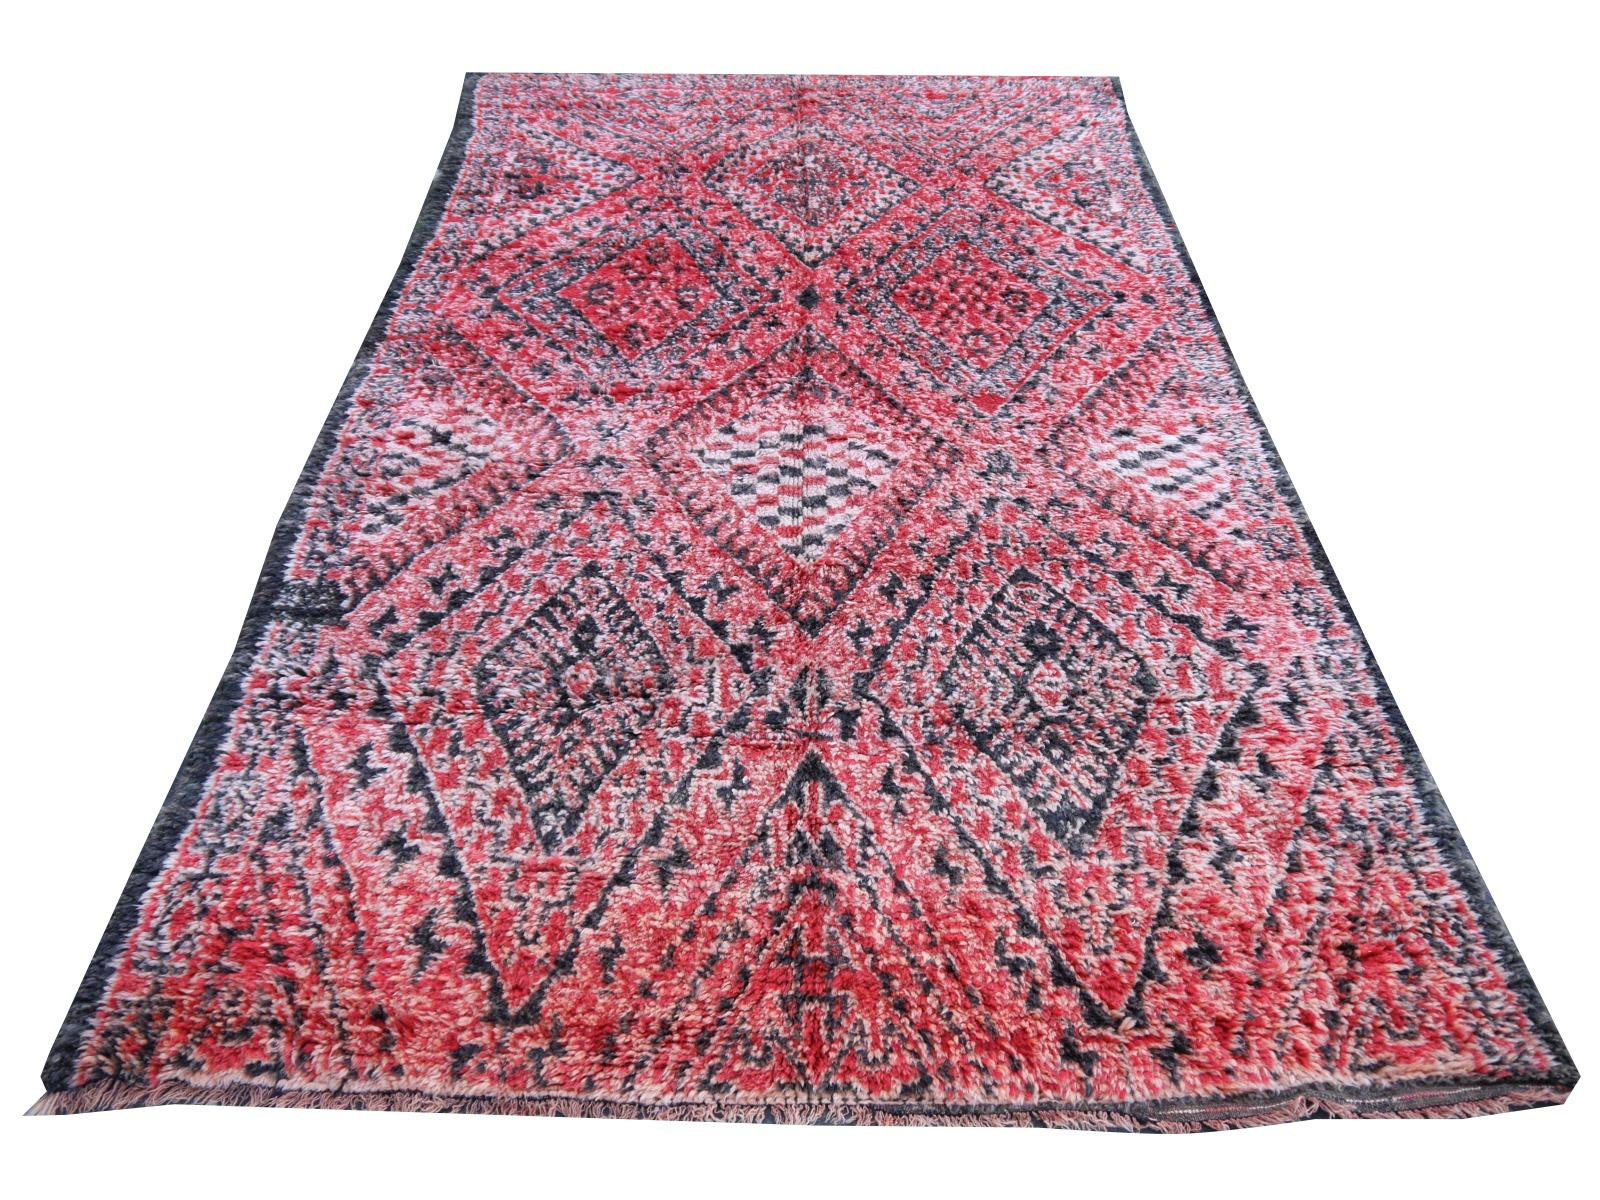 Berberteppiche werden hauptsächlich in Marokko, Tunesien und Algerien hergestellt. Größter Produzent sind die Stammes- und Nomadenvölker der Berber in Marokko. In verschiedenen Gebieten entstehen sehr schöne Kunstwerke. 

Dieser Teppich wurde in